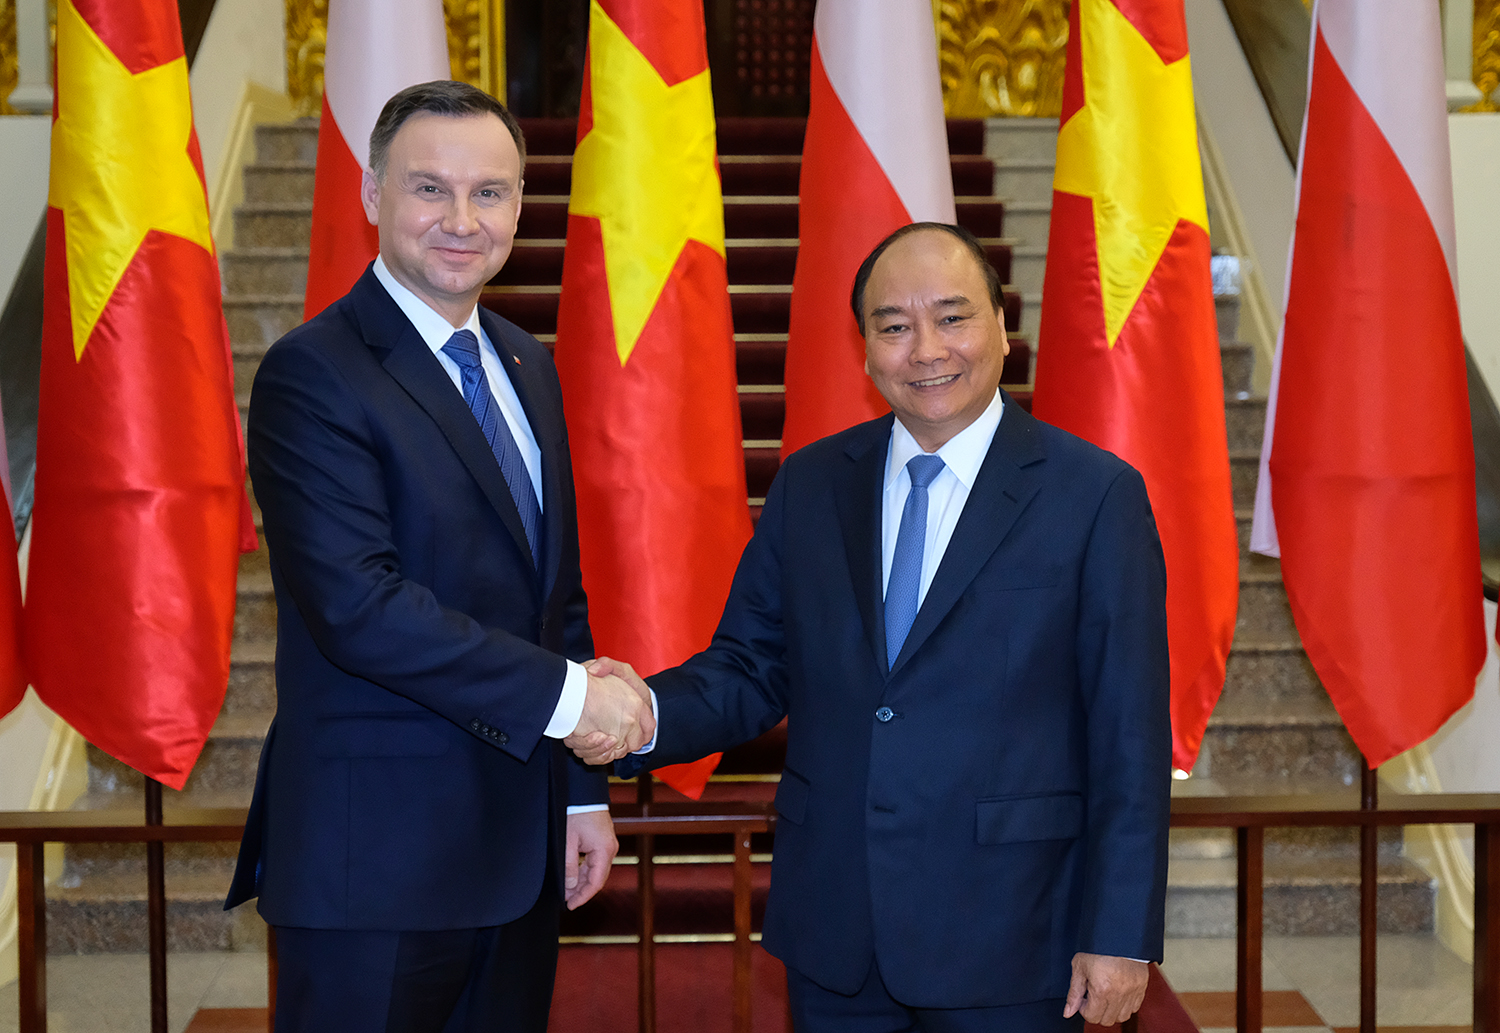 Ba Lan chọn Việt Nam trong 5 nước có tiềm năng lớn nhất để phát triển hợp tác kinh tế